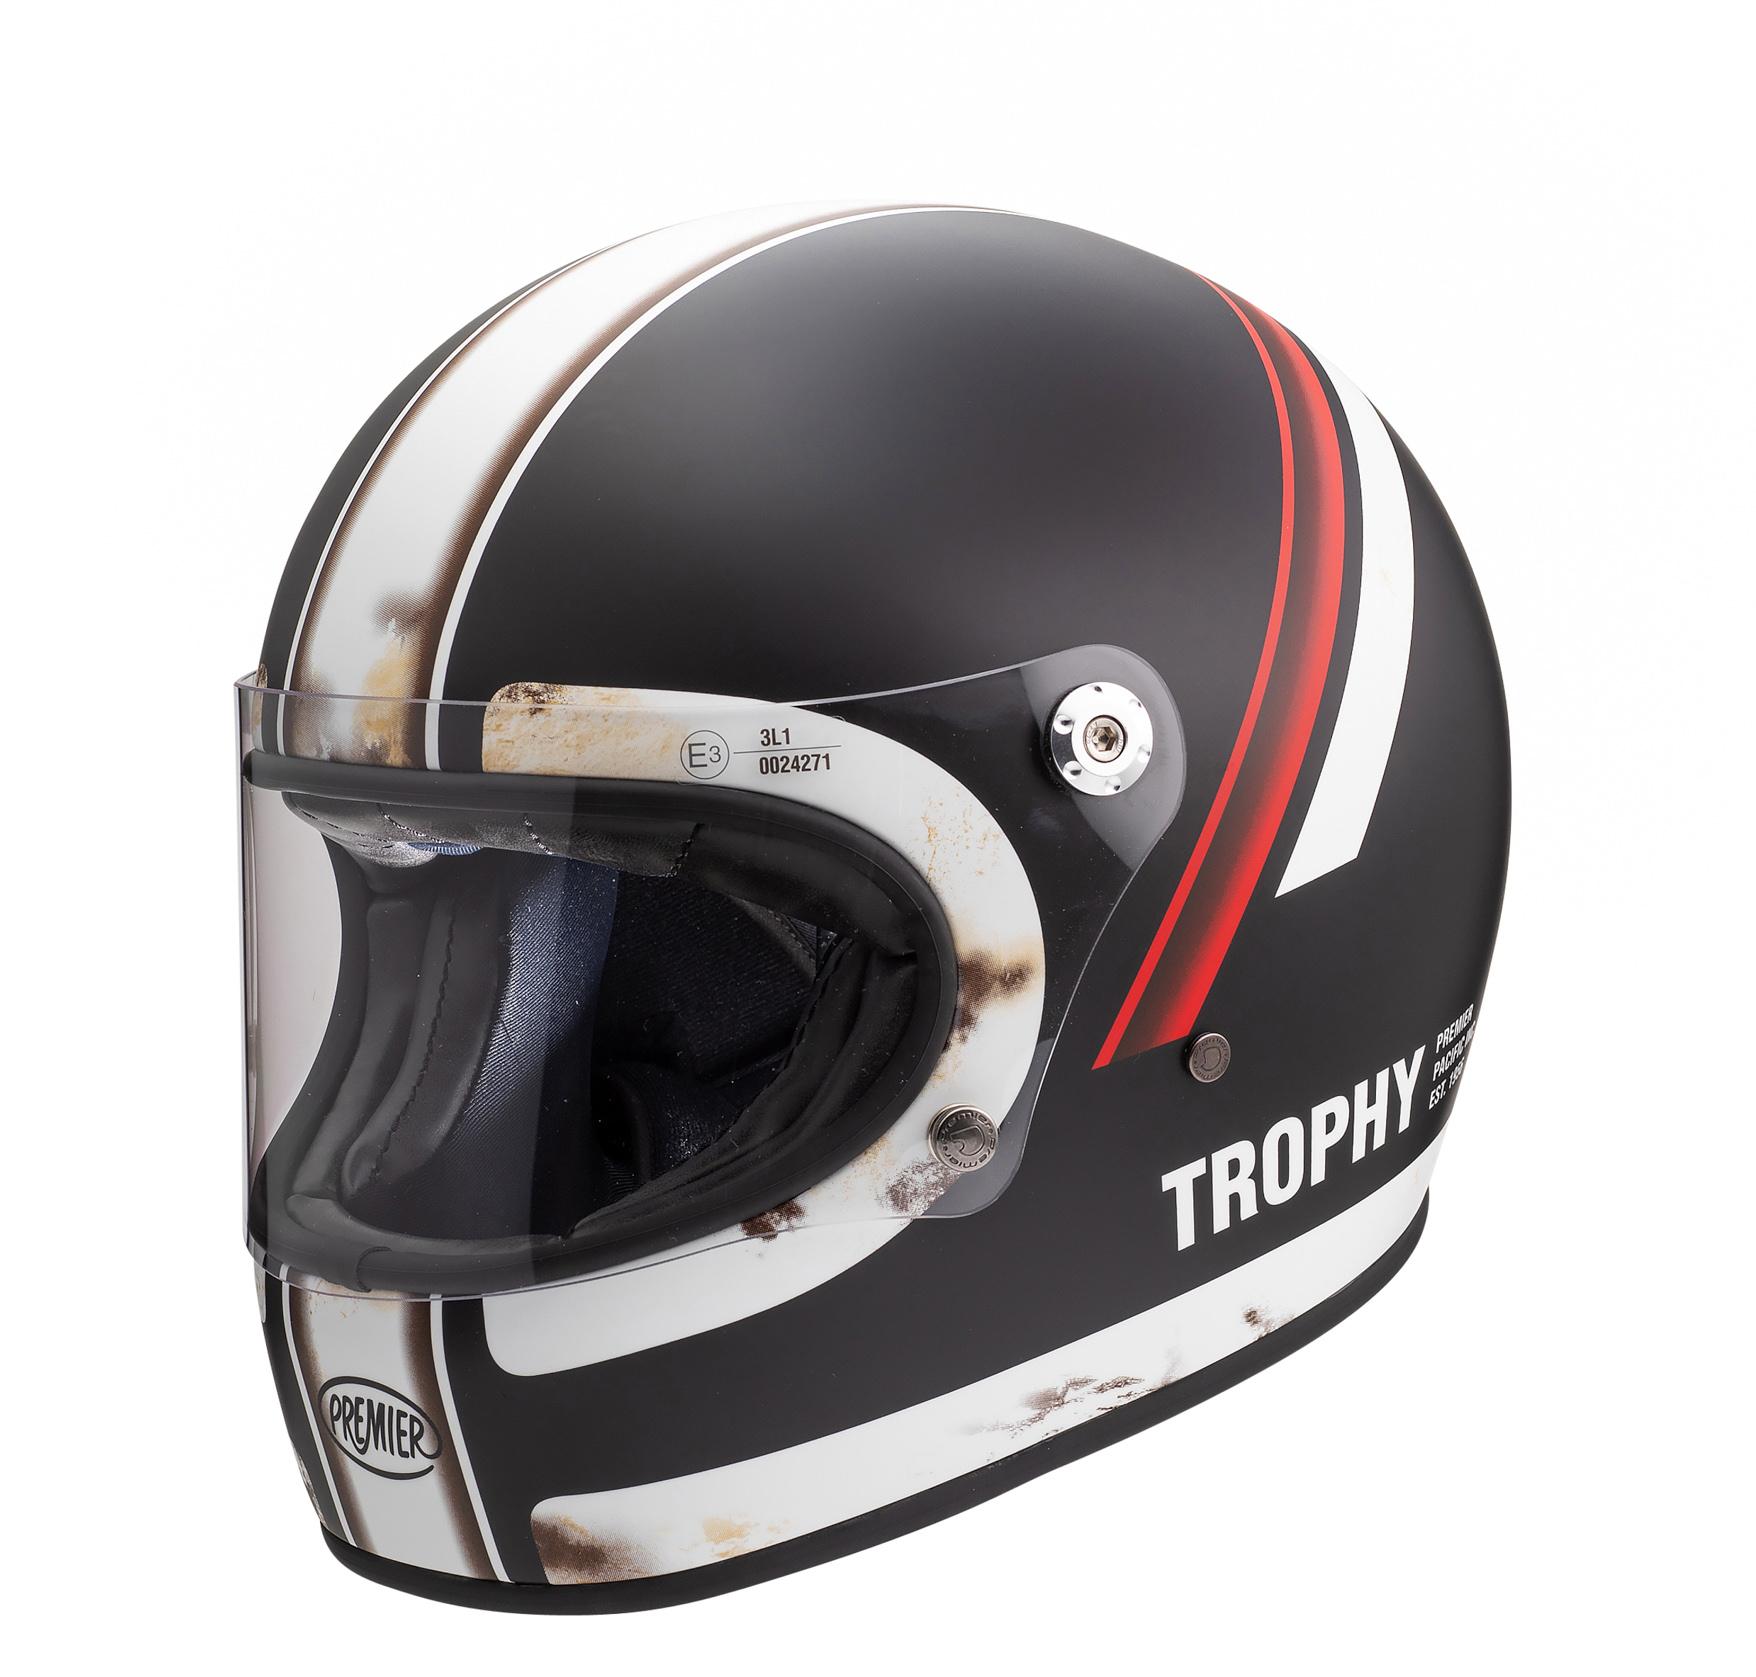 Premier Trophy Full Face Motorcycle Helmet Do - Black/White, Xl